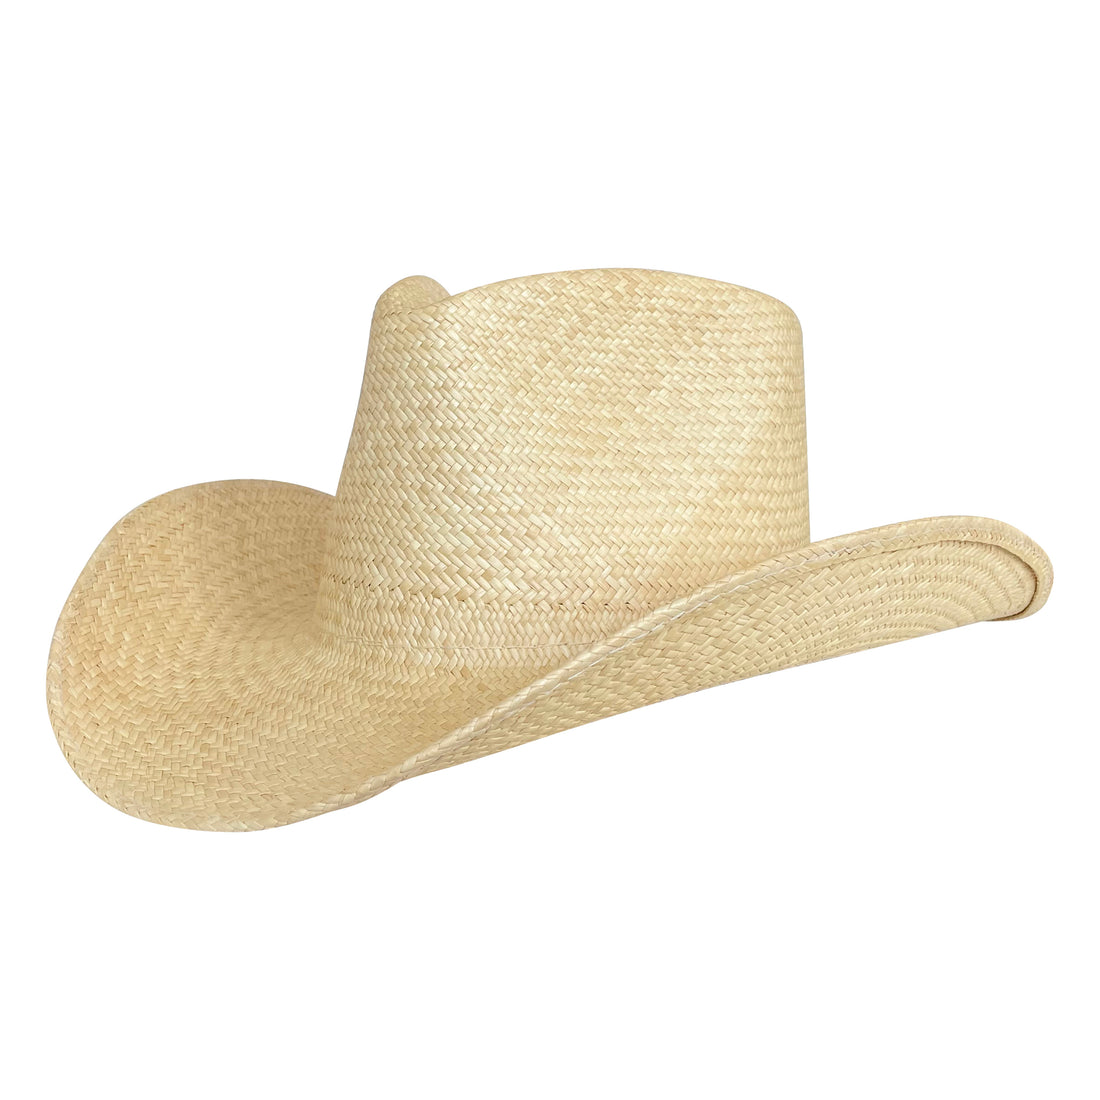 Western Straw Hat - Neutrals